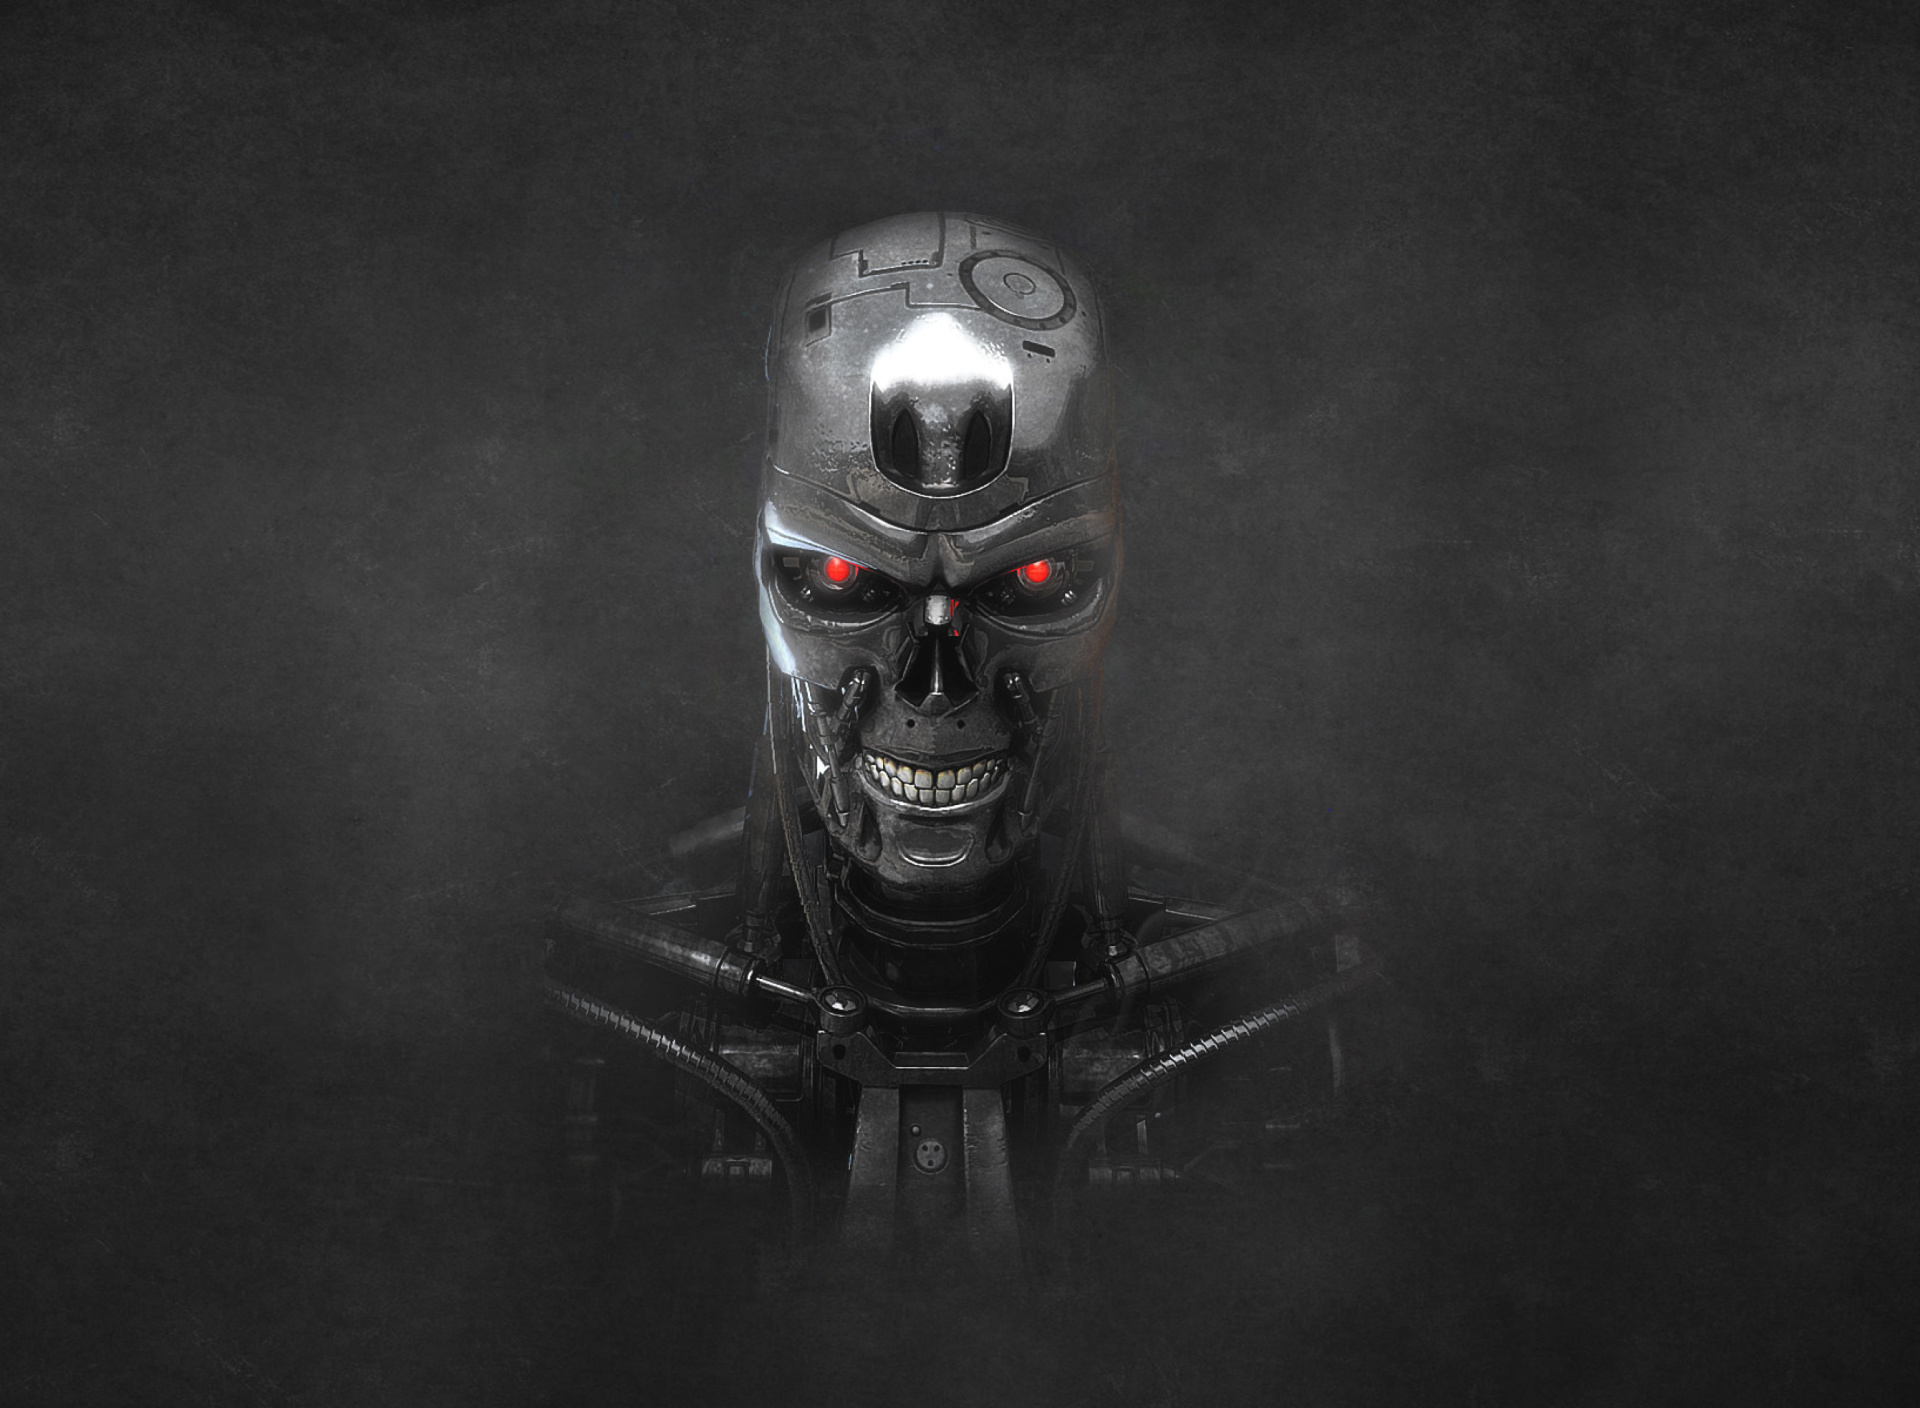 Sfondi Terminator Endoskull 1920x1408